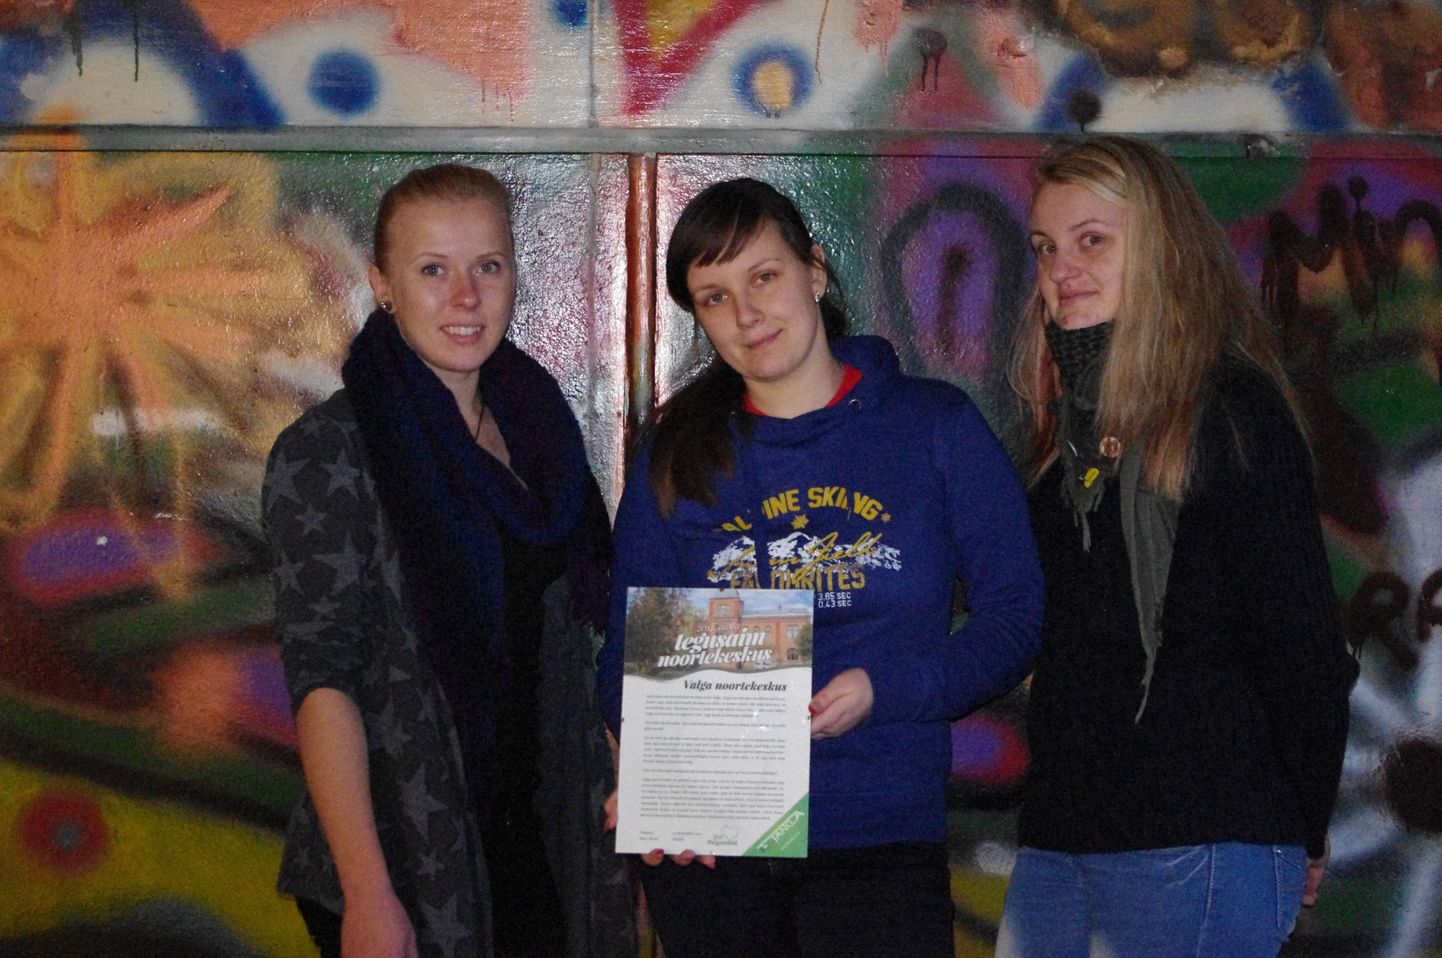 Valga avatud noortekeskuse töötajad Dea Margus (vasakul), Maarja Mägi ja Marje Vokk.
Foto: Lea Margus / Valgamaalane